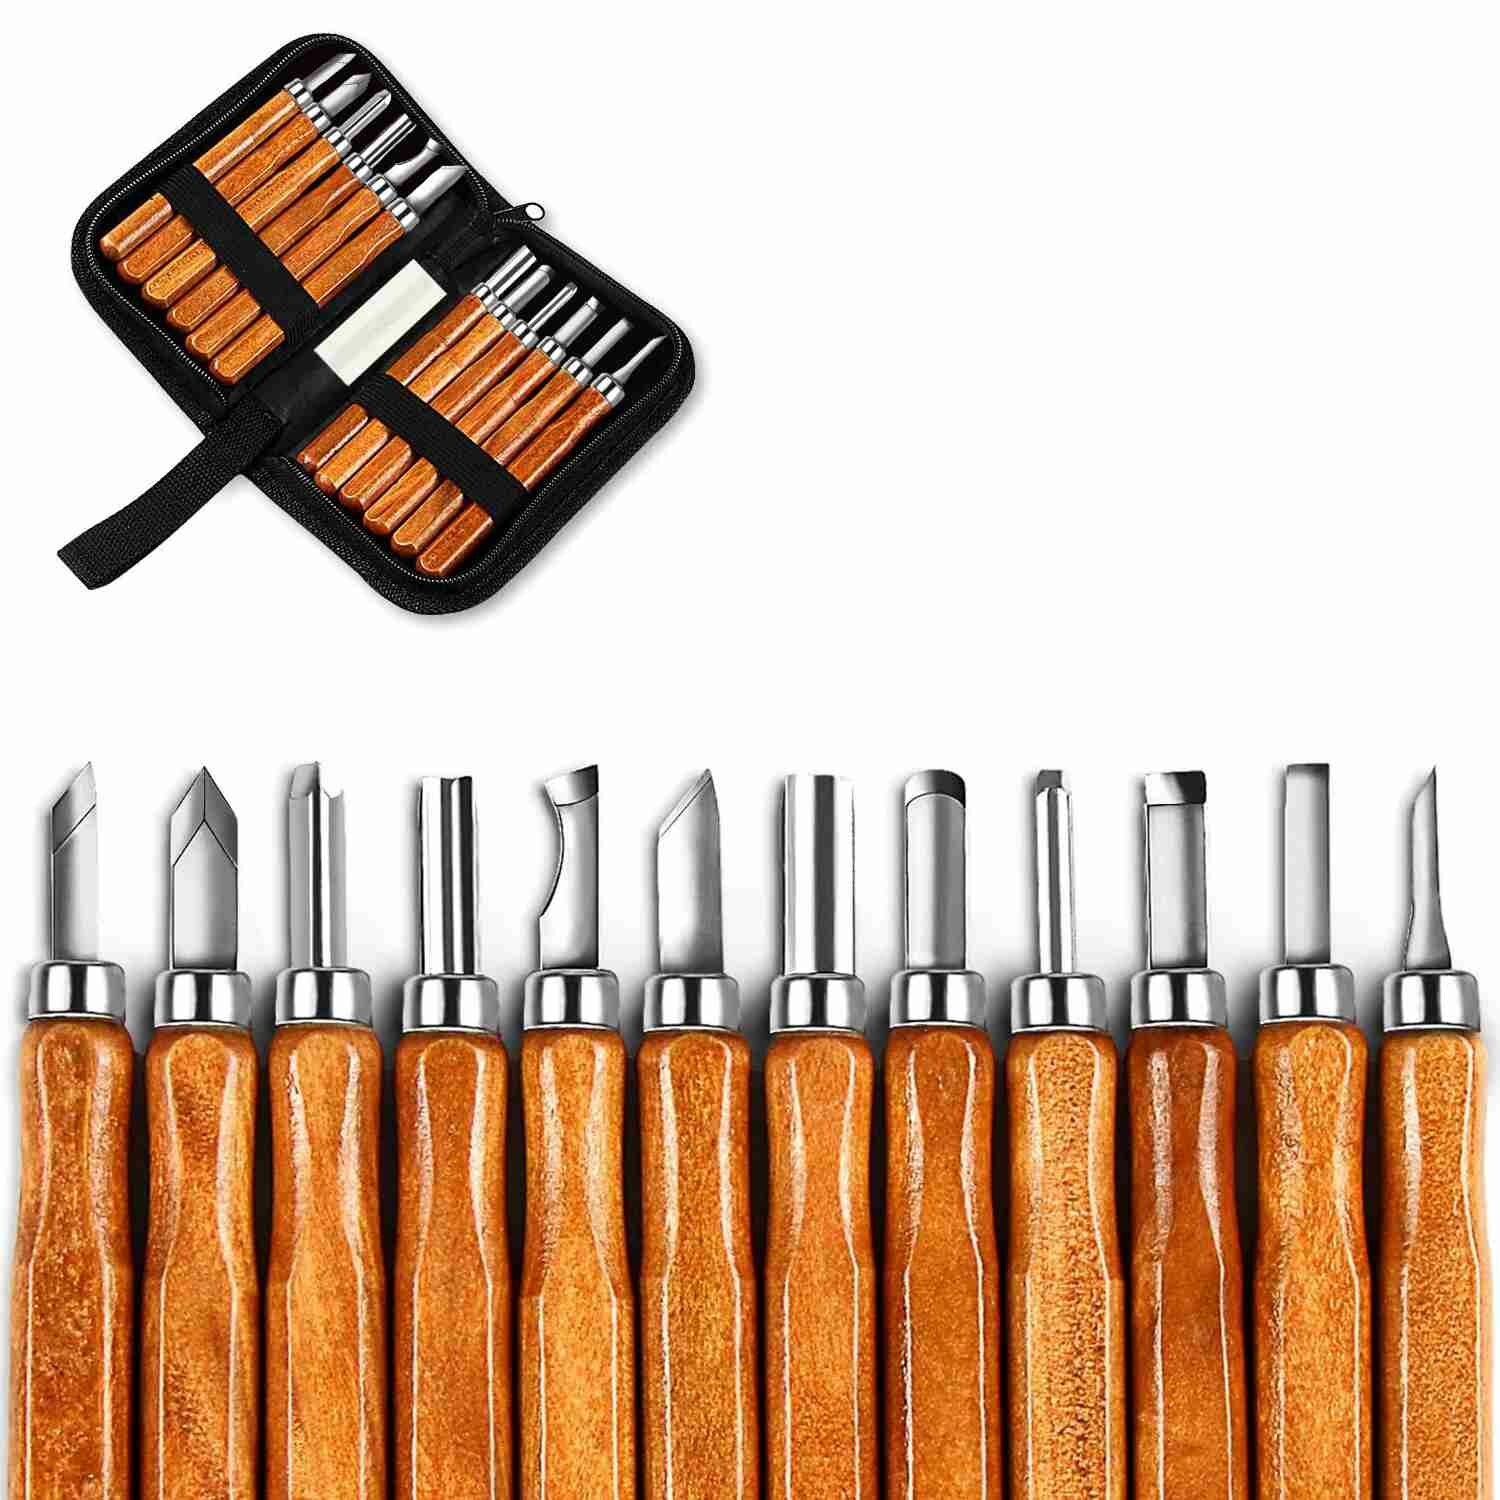 

12pcs/set Wood Handle Wood Carving Chisel surgical Tools Set Cutter Wood Carving Set Hand Tool Kit